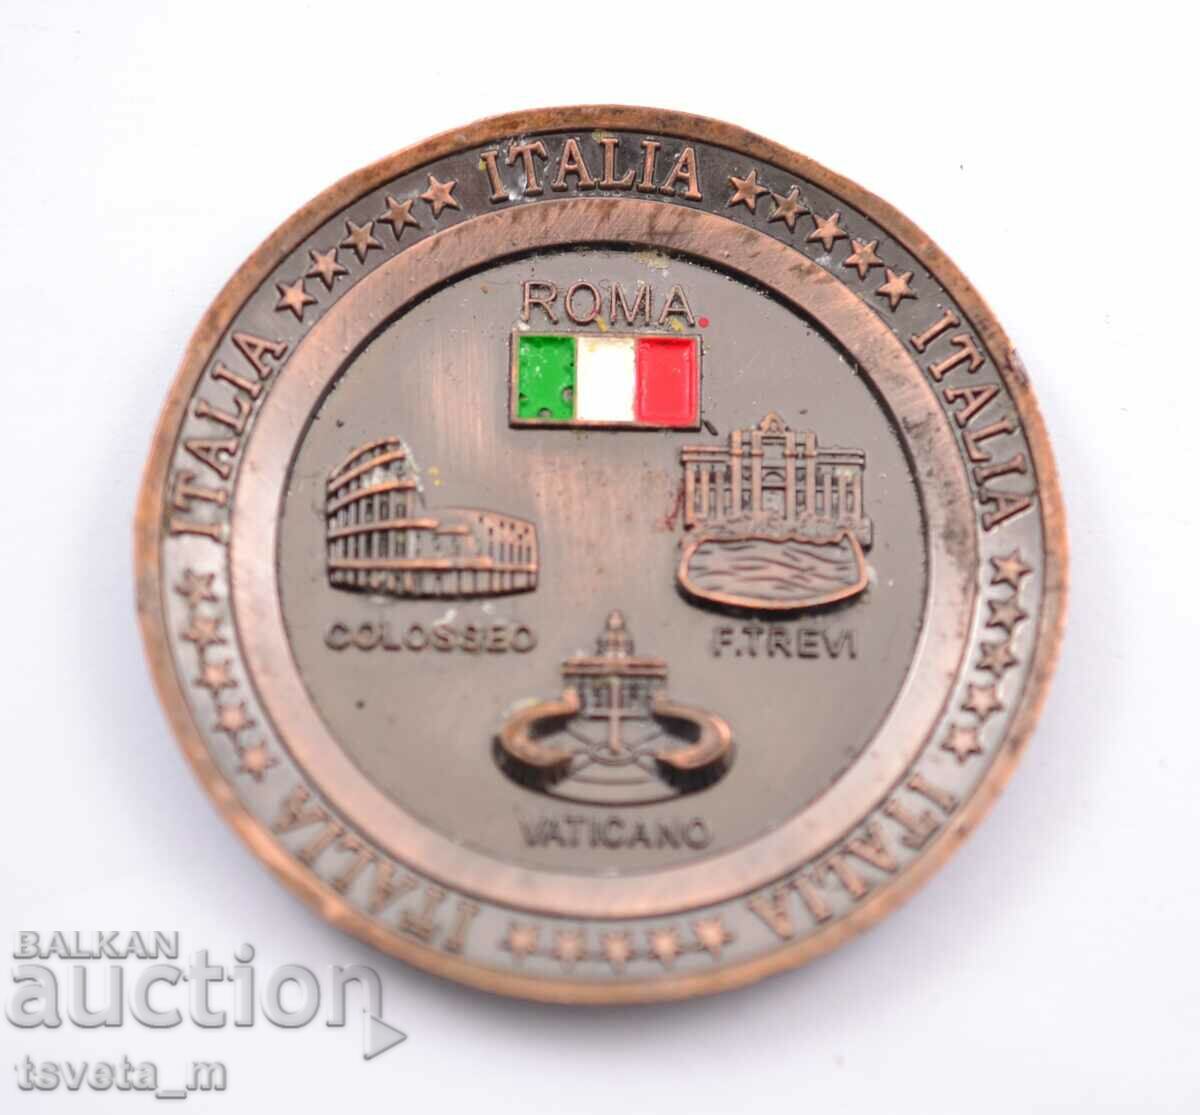 Μικρό μεταλλικό πιατάκι, αναμνηστικό Ιταλία